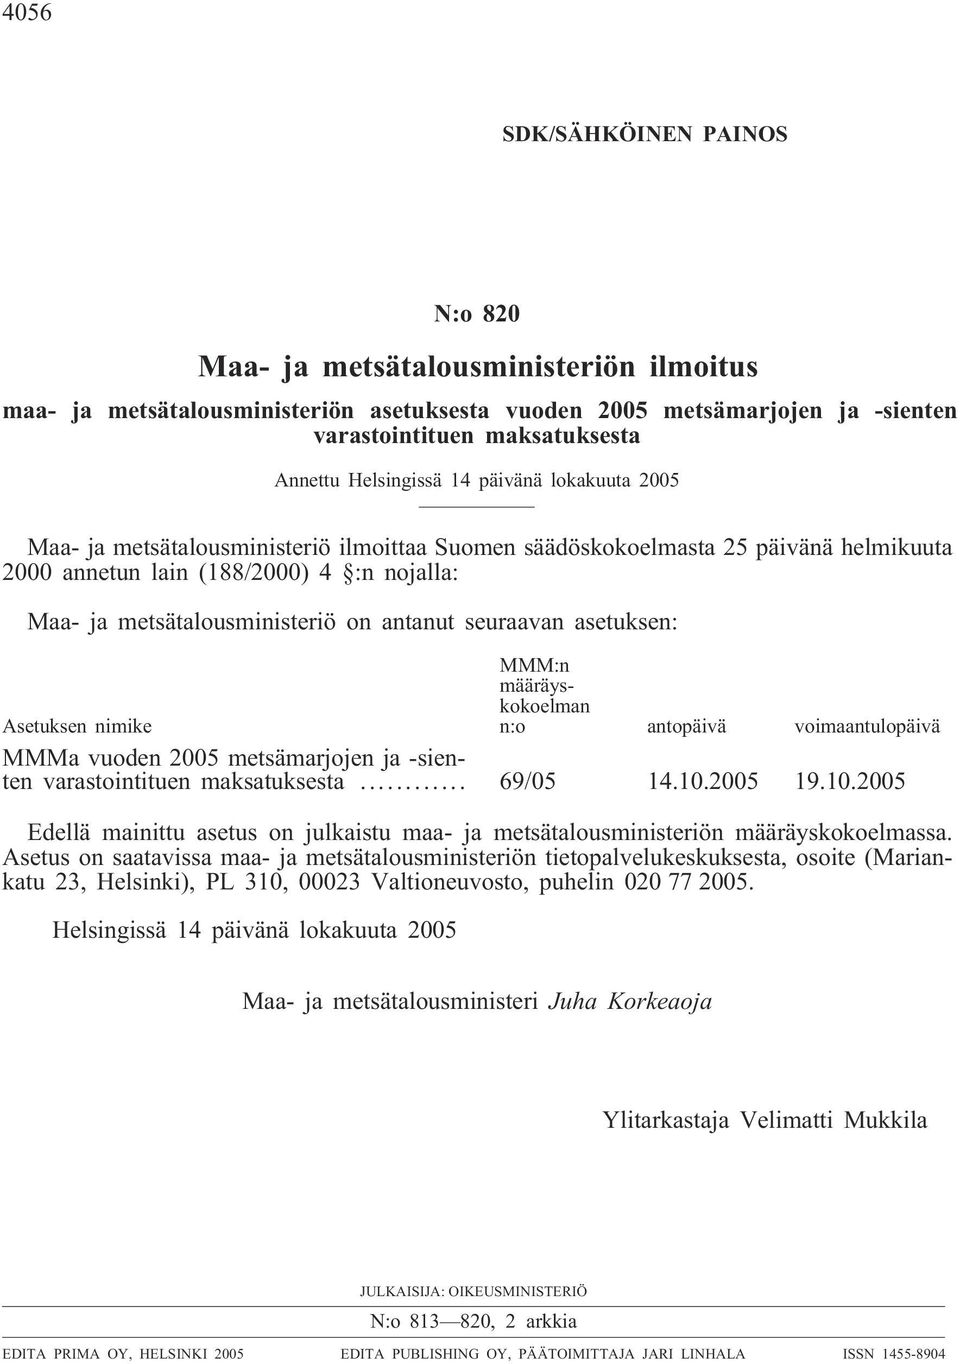 on antanut seuraavan asetuksen: Asetuksen nimike MMM:n määräyskokoelman n:o antopäivä voimaantulopäivä MMMa vuoden 2005 metsämarjojen ja -sienten varastointituen maksatuksesta... 69/05 14.10.2005 19.